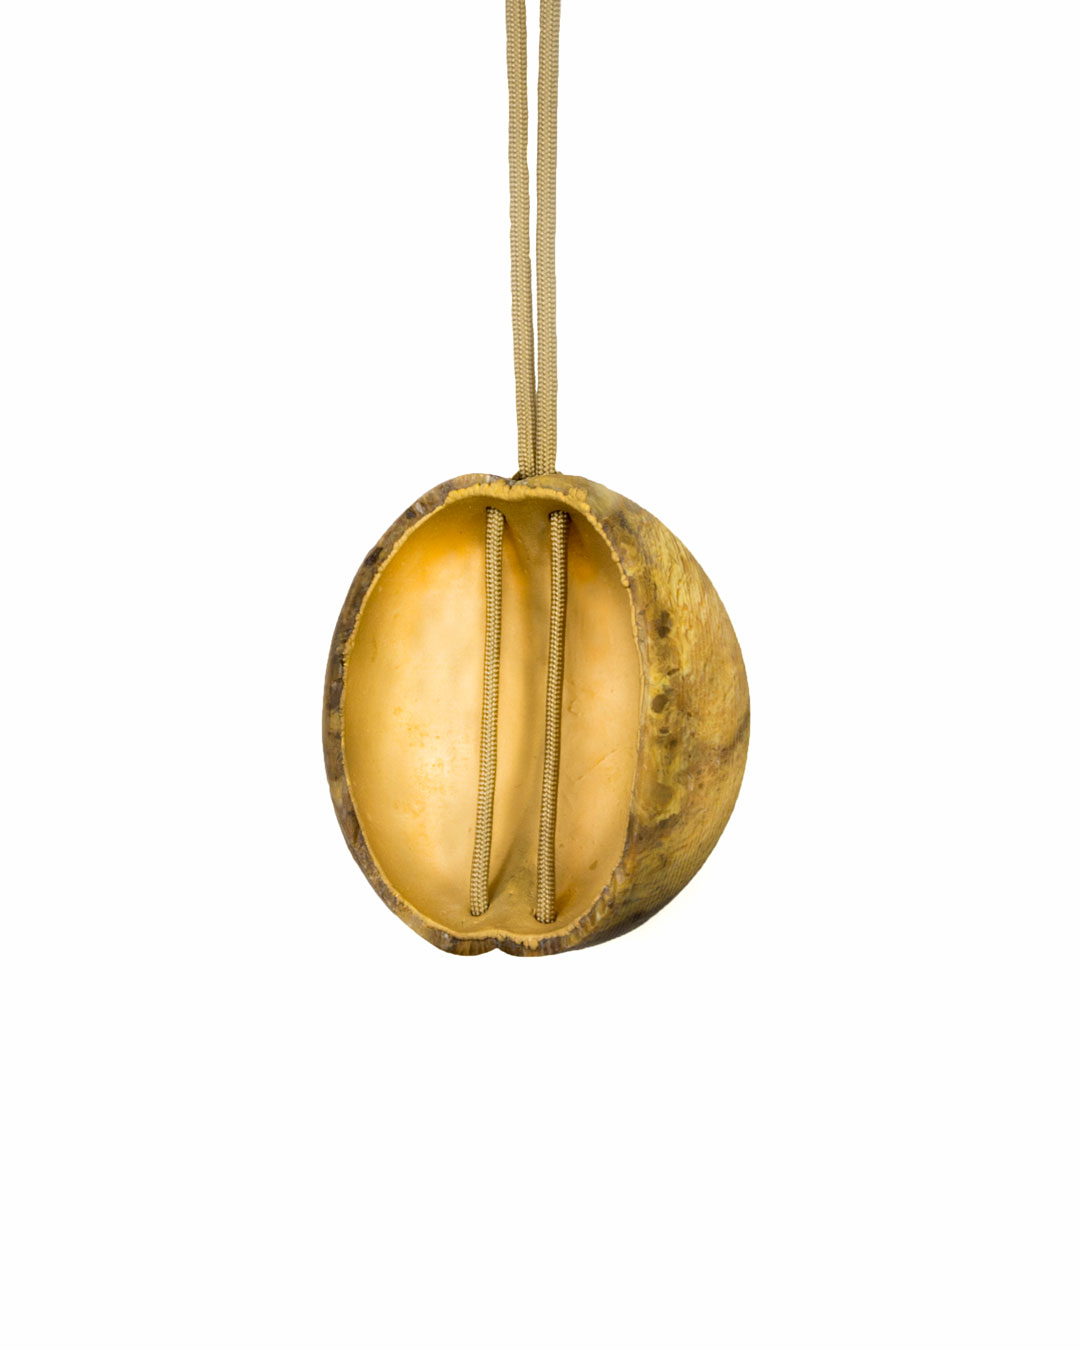 Edu Tarín, untitled, 2016, pendant; yellow jasper, copper, gold, 95 x 90 x 50 mm, €5450